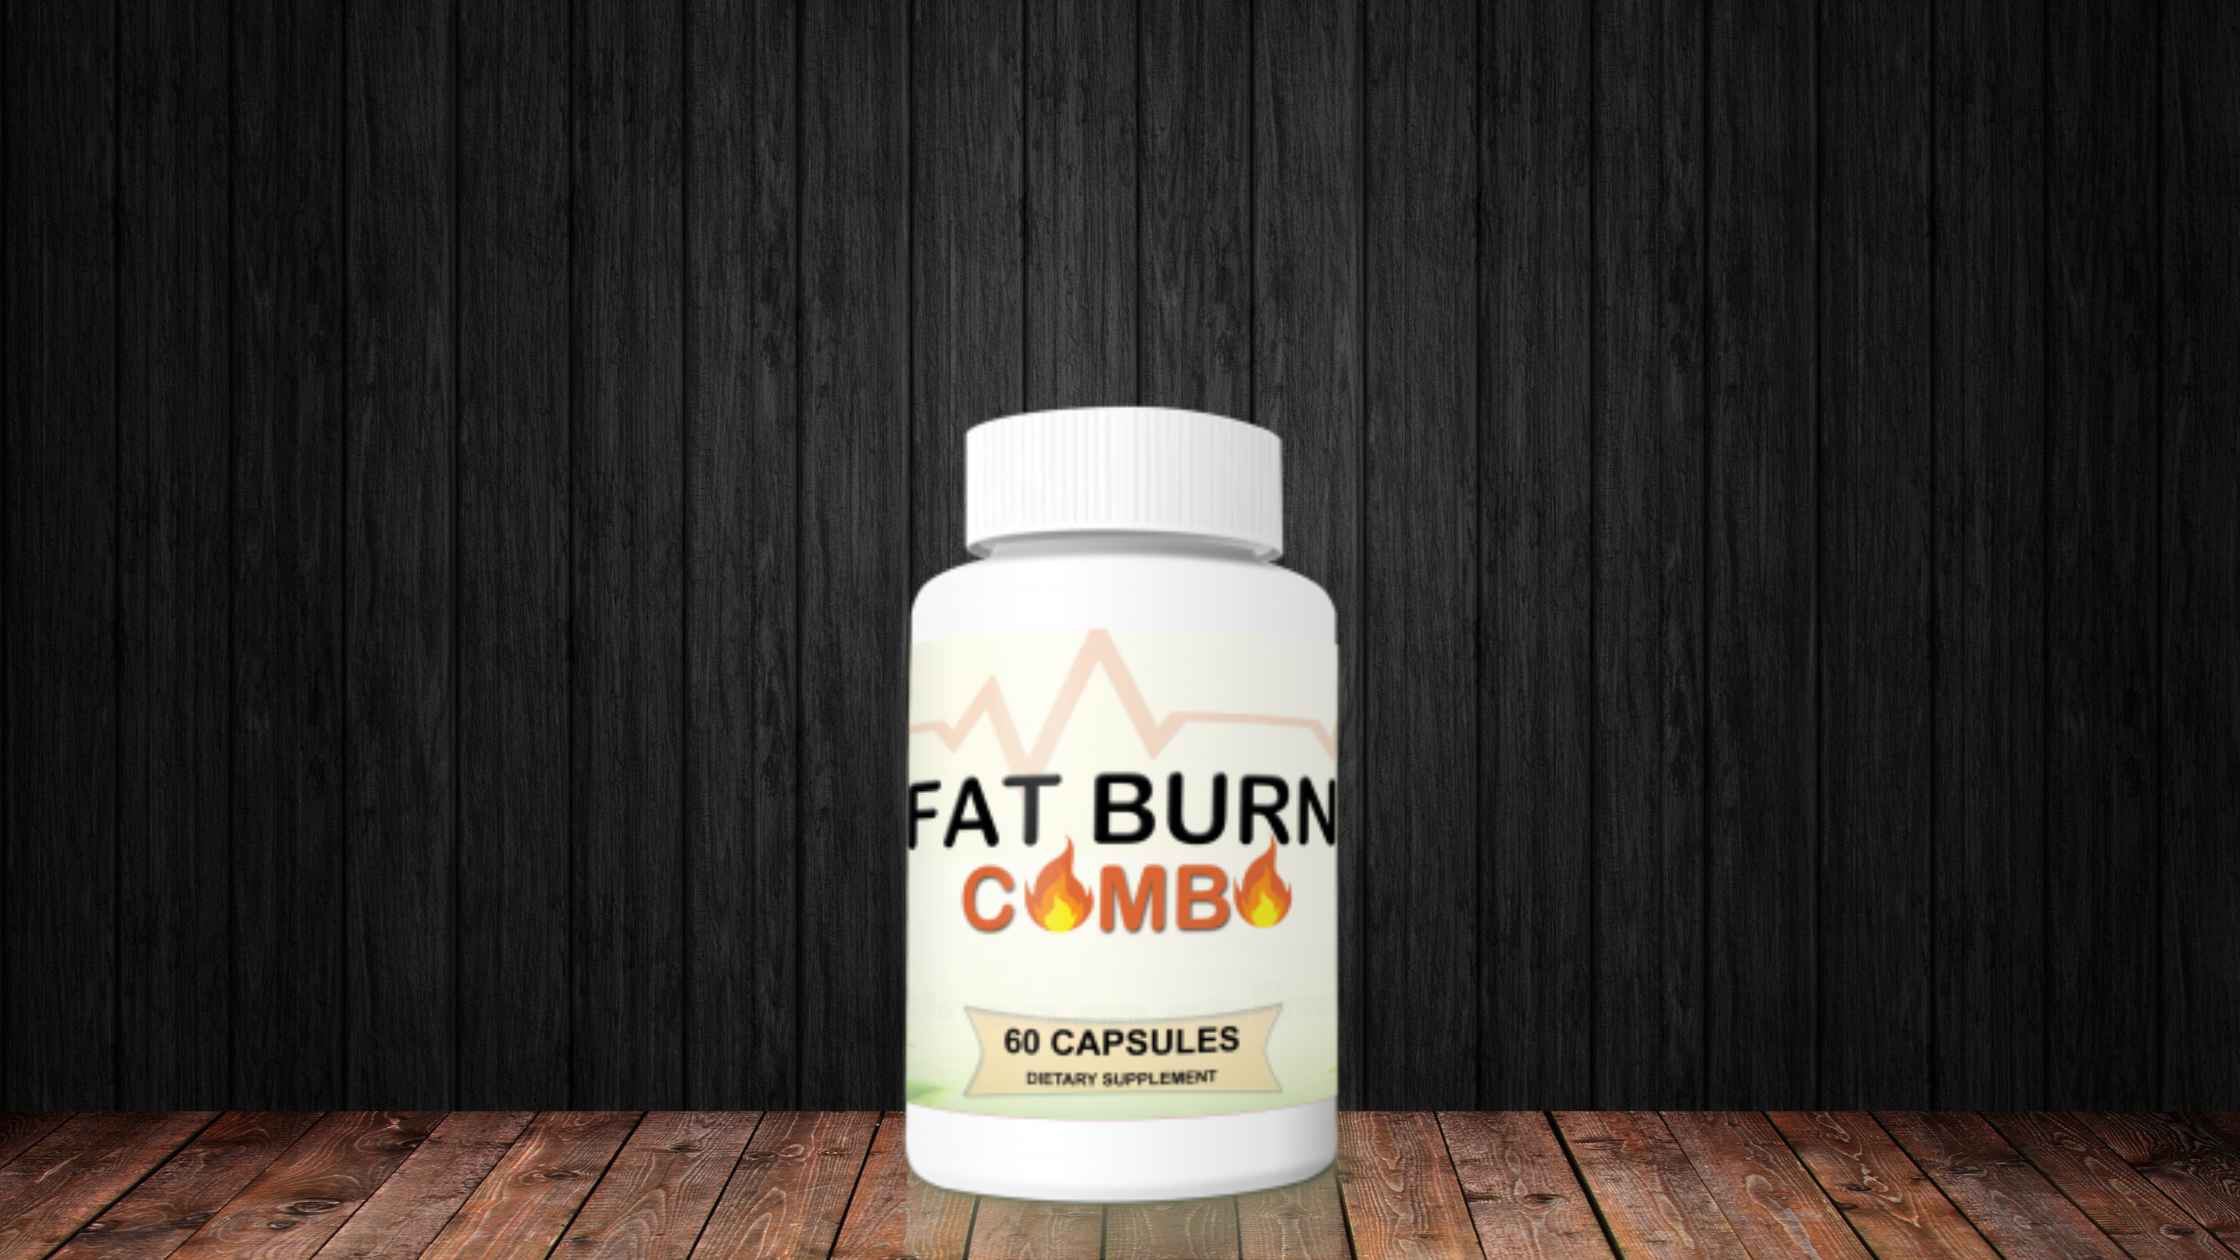 Fat Burn Combo Reviews